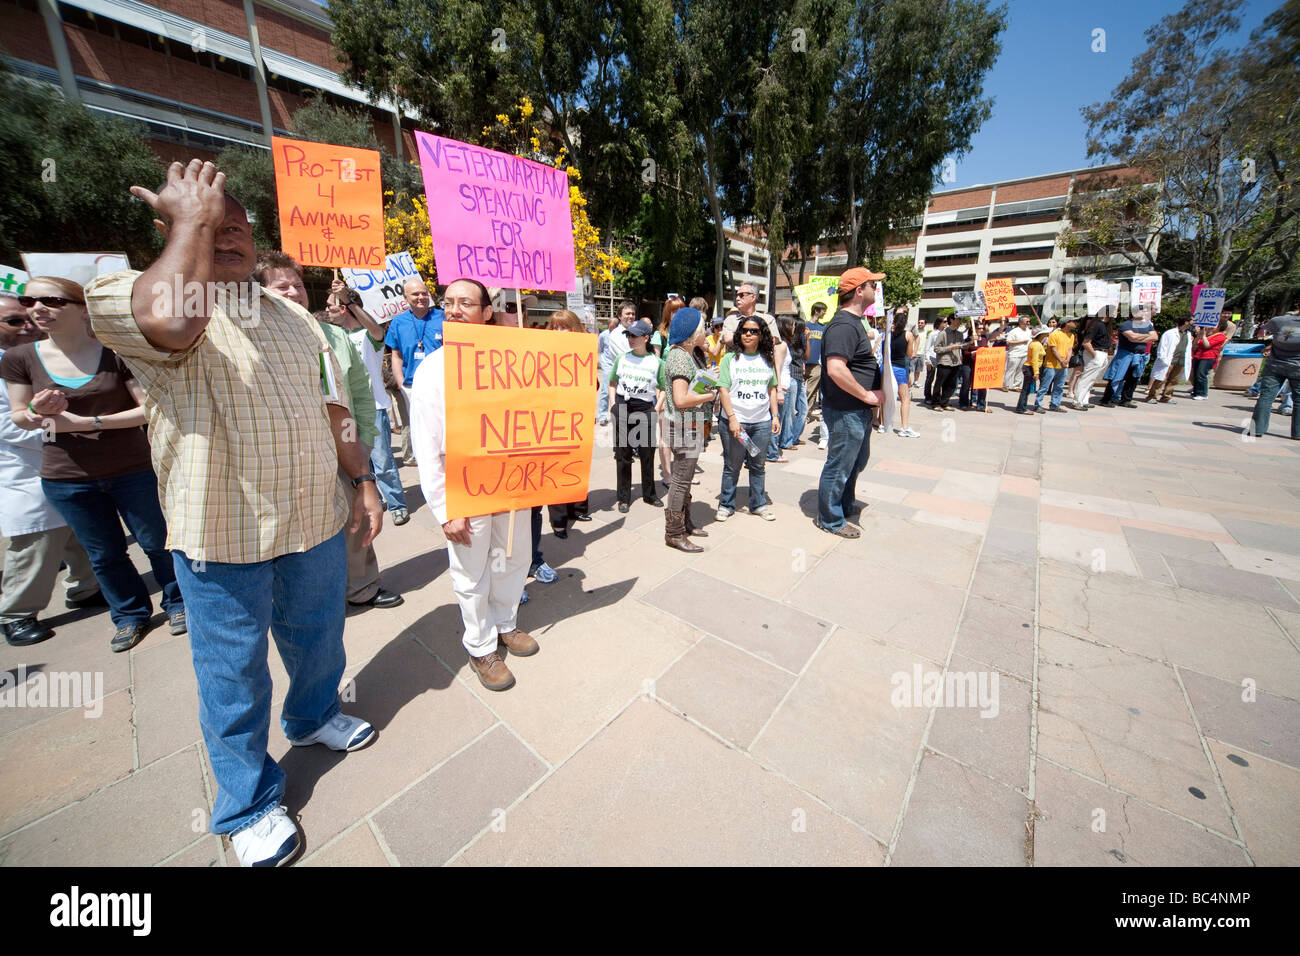 Les participants d'un rallye de recherche pro à l'université UCLA, défendre l'utilisation des animaux en recherche biomédicale sur le jour de la Terre. Banque D'Images